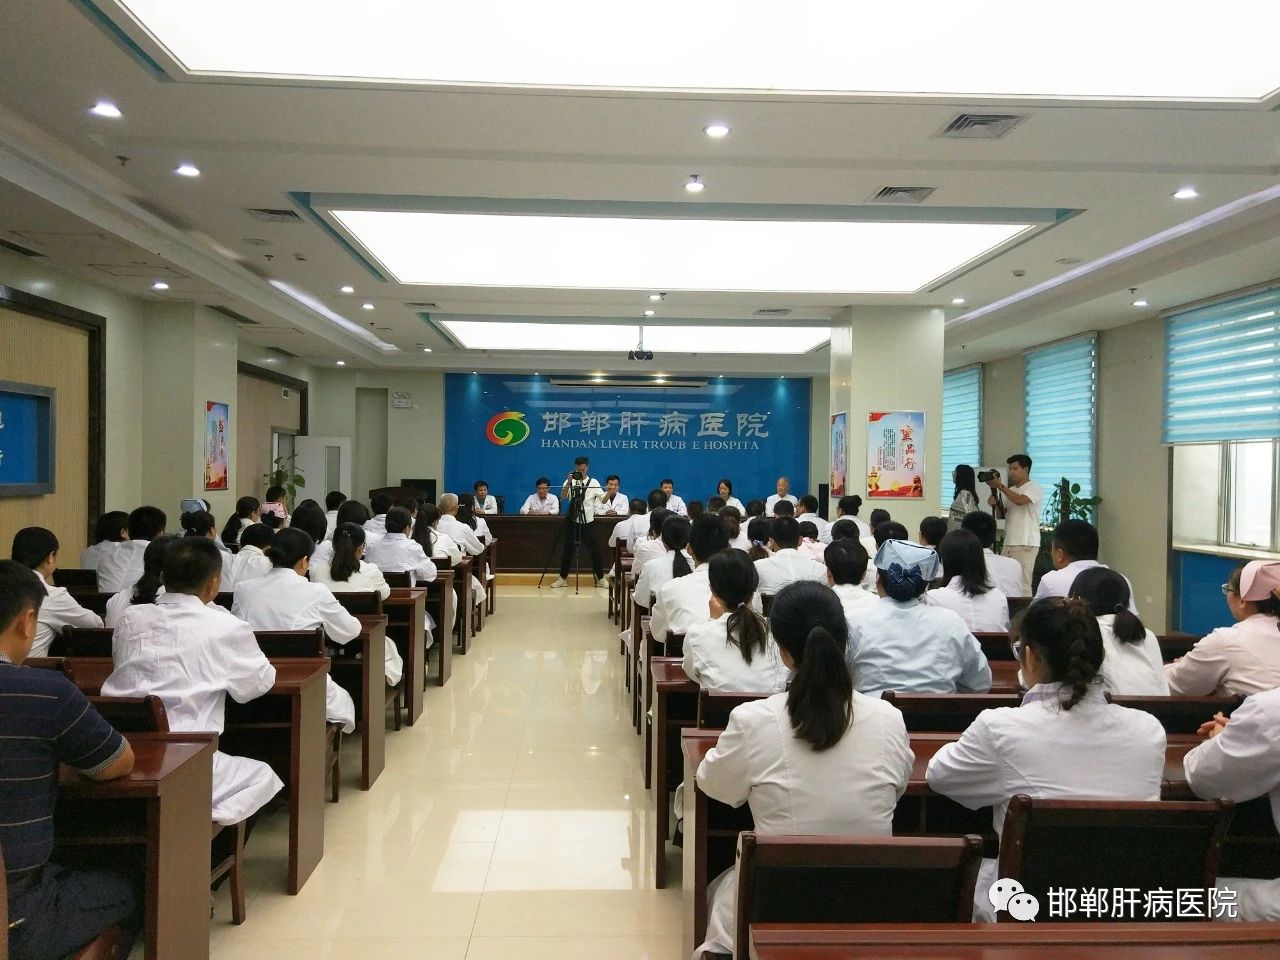 淋滞疏通丸治胸腹水的邯郸市肝病医院召开第八届工会会员代表大会"